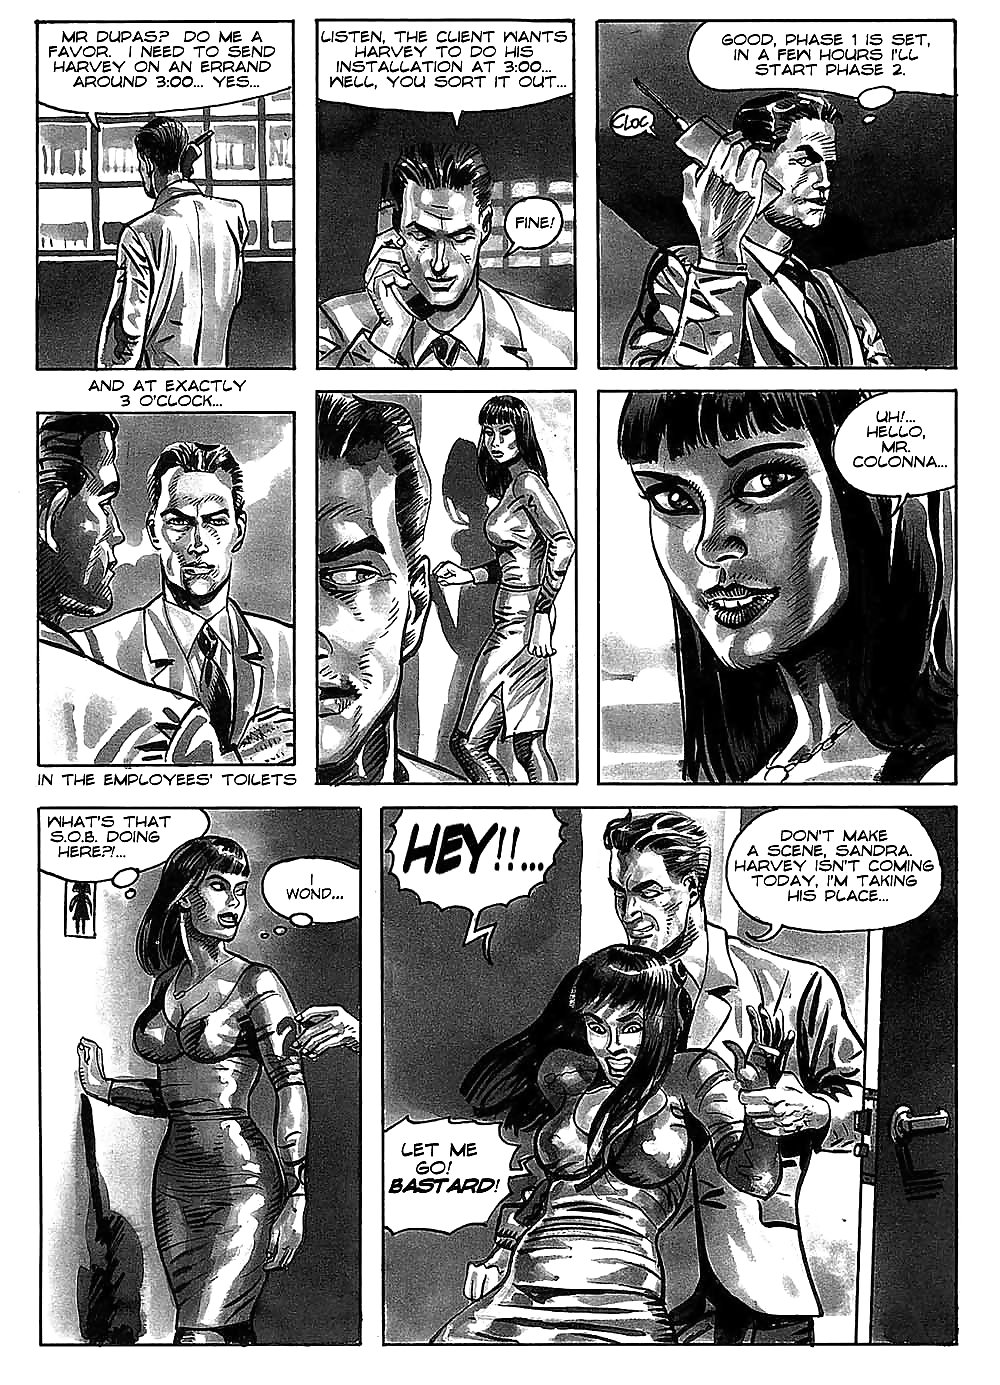 Hot comics 52 #19539698